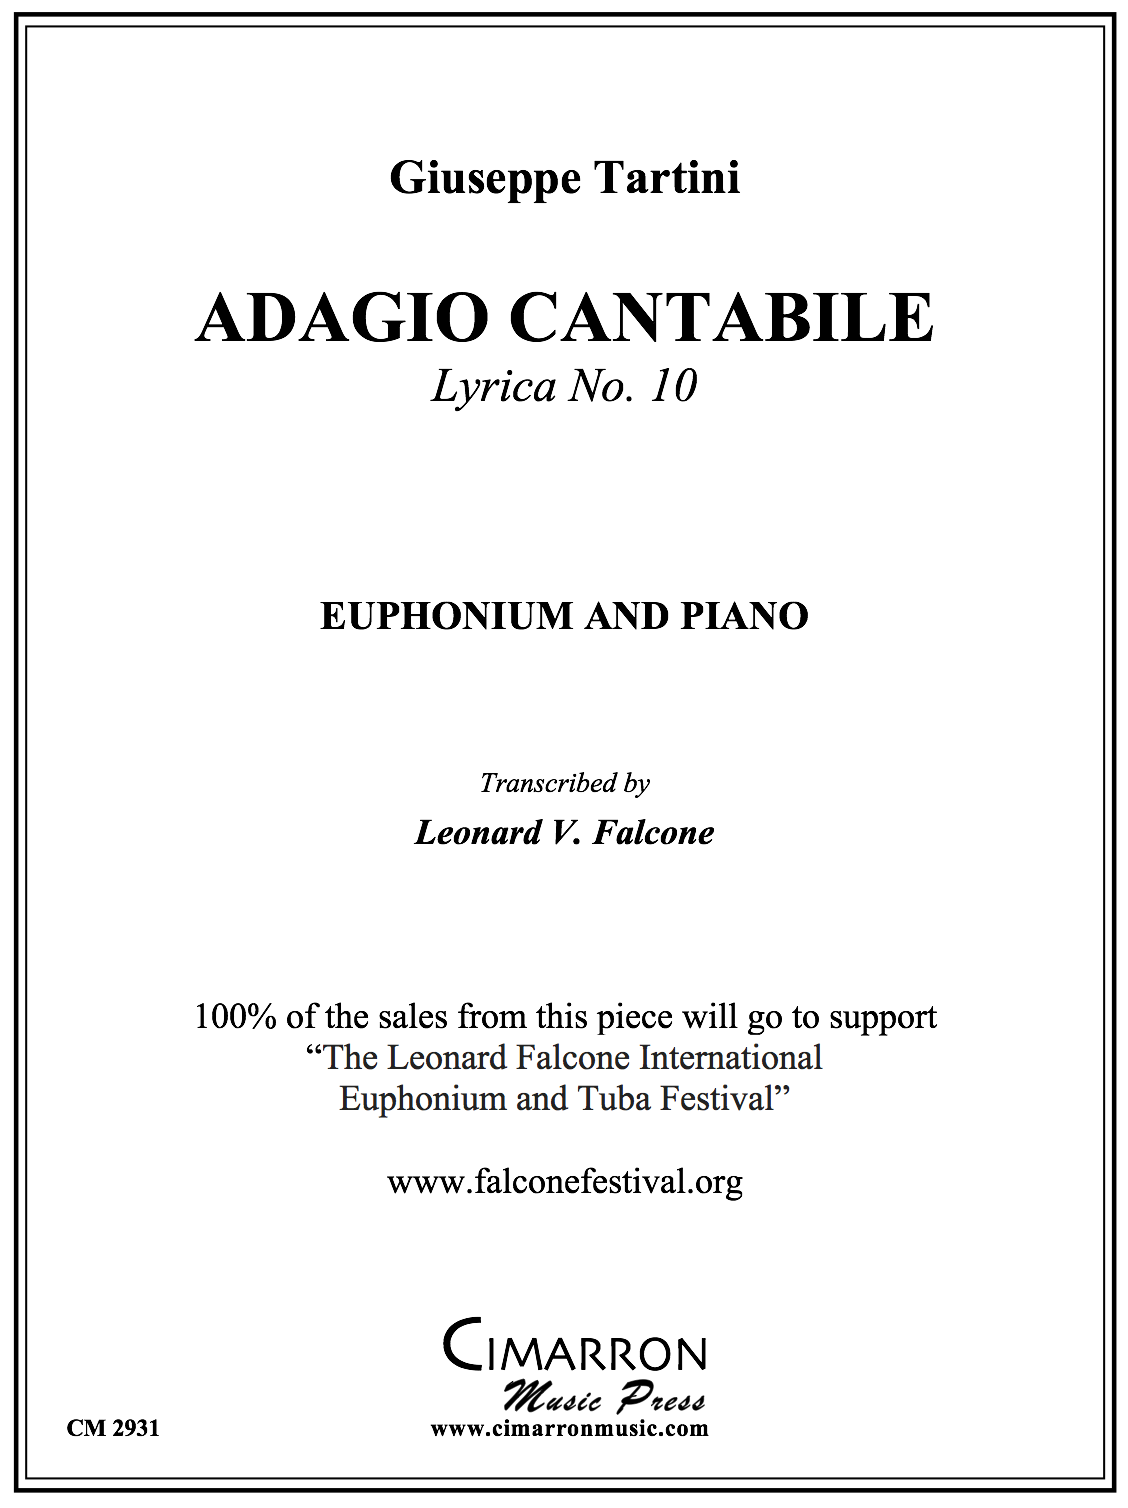 Tartini arr. Falcone - Andante Cantabile (Adagio Cantabile)